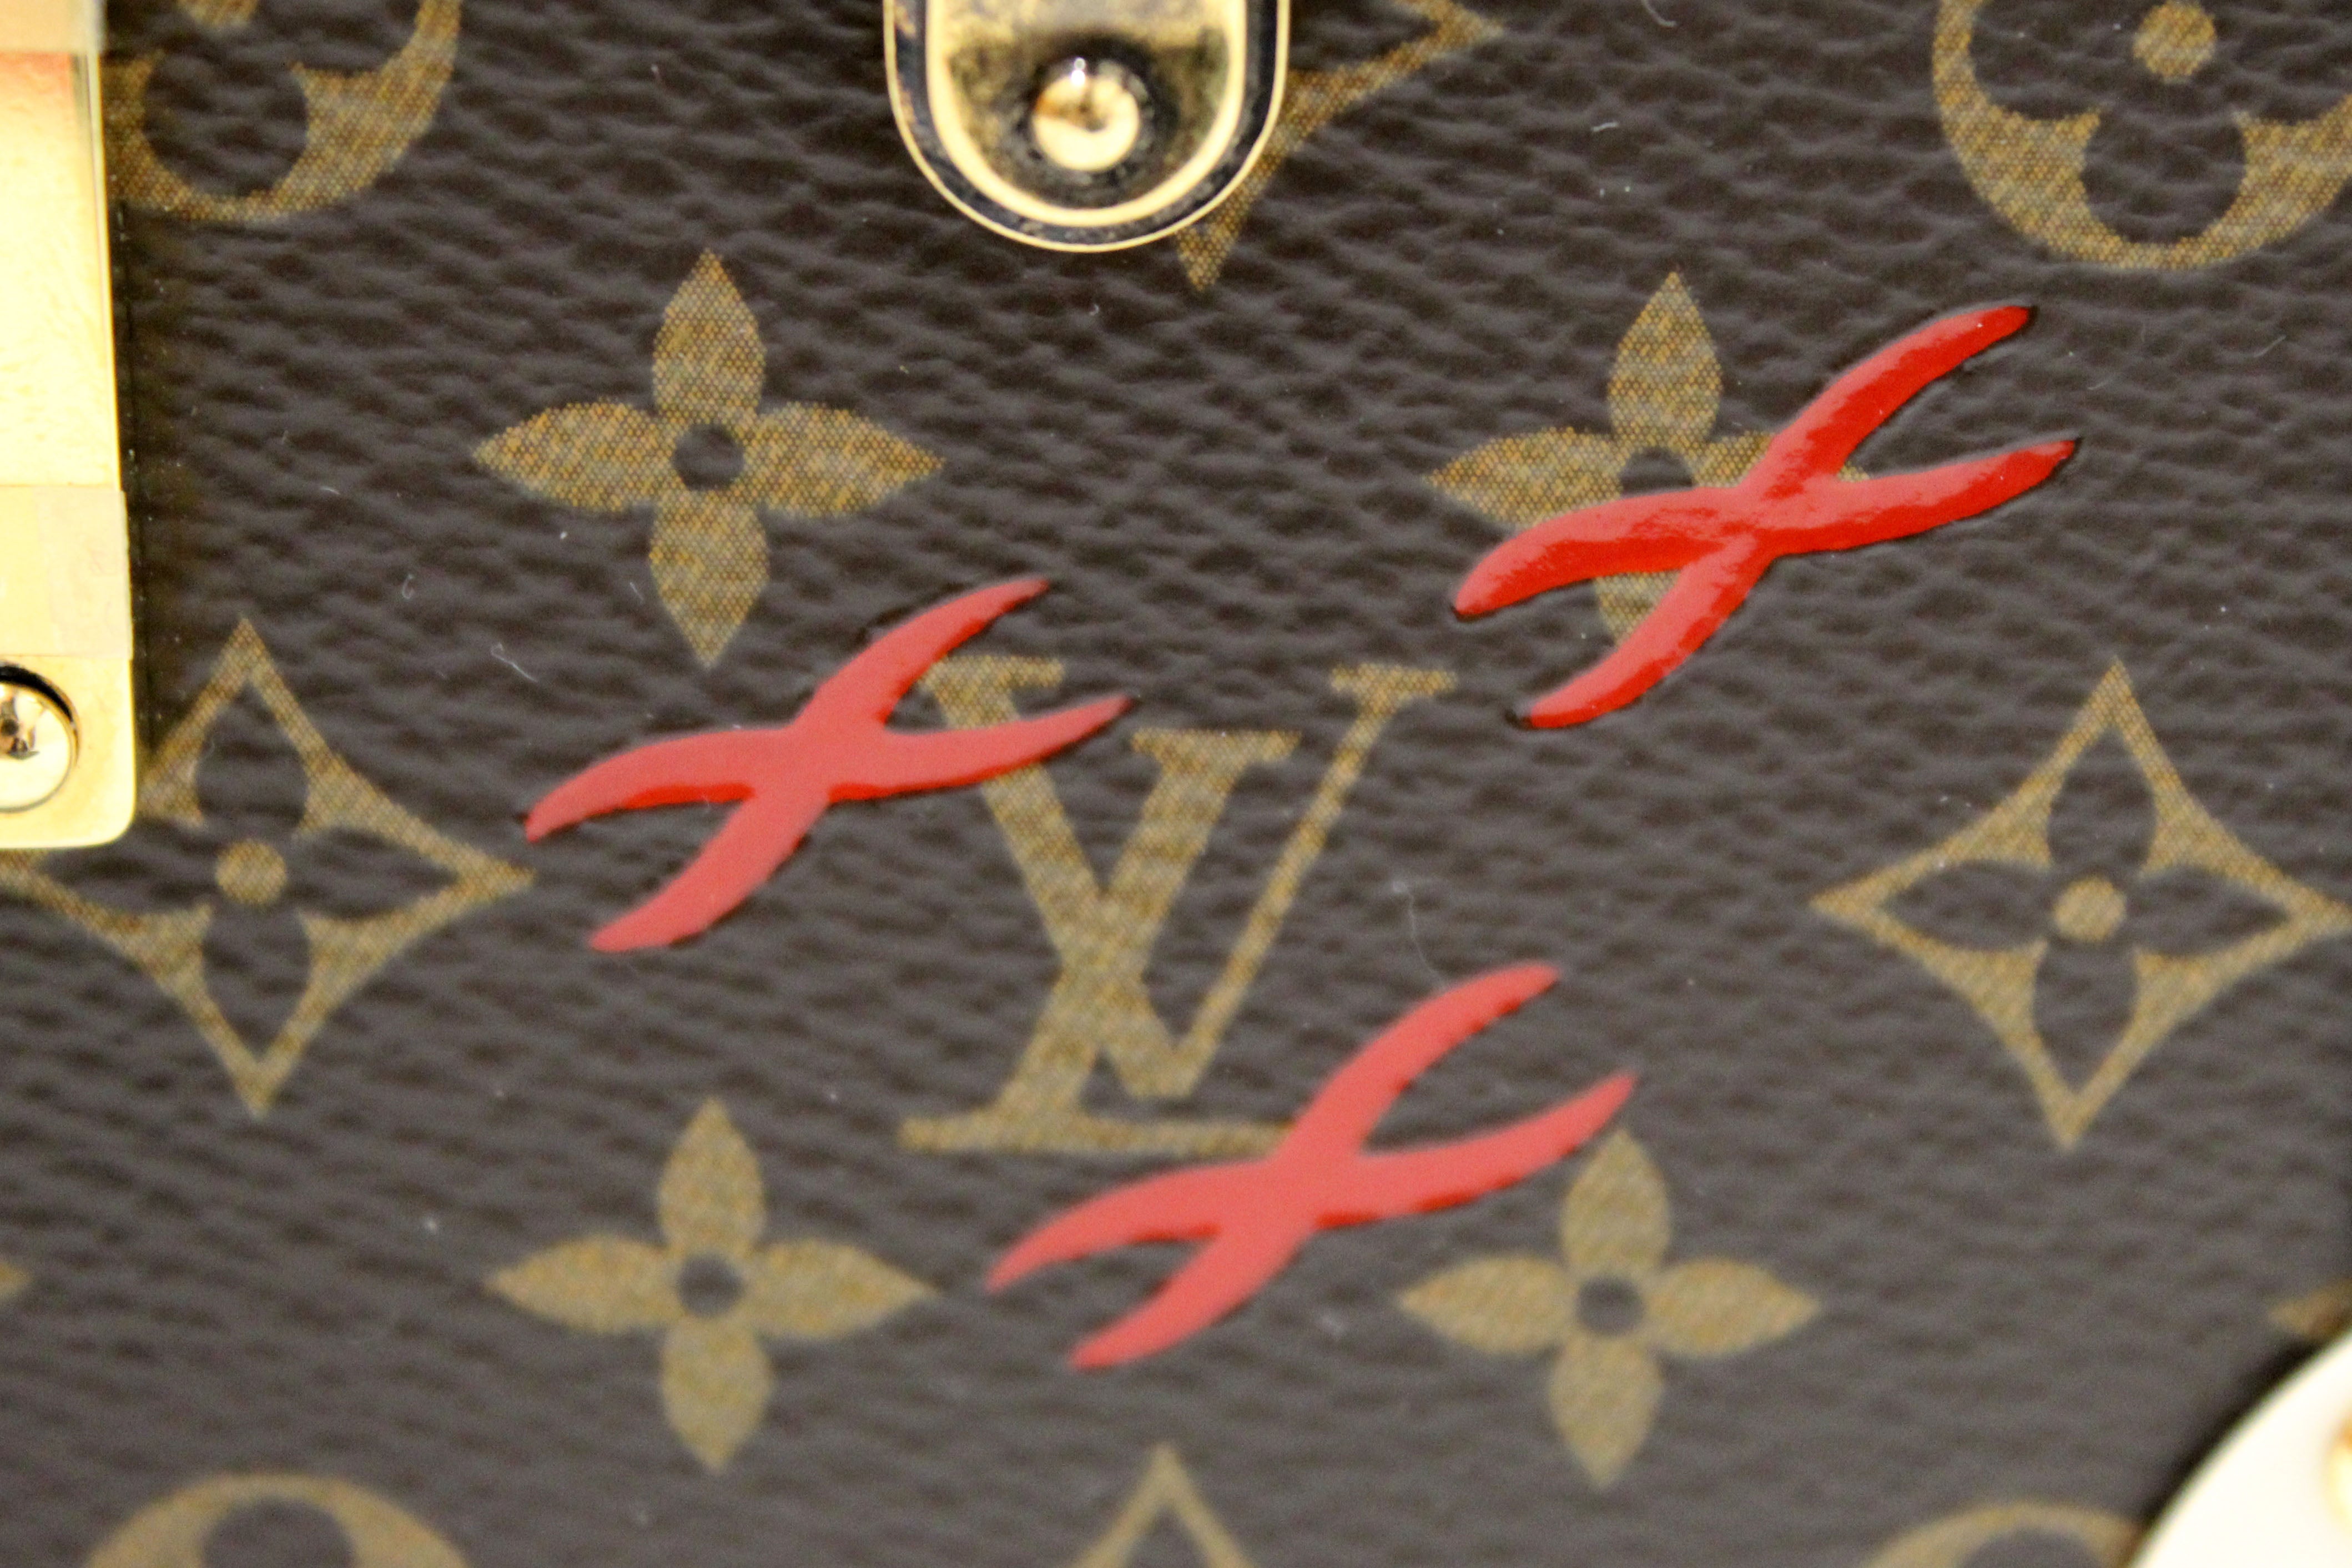 Authentic Louis Vuitton Bags